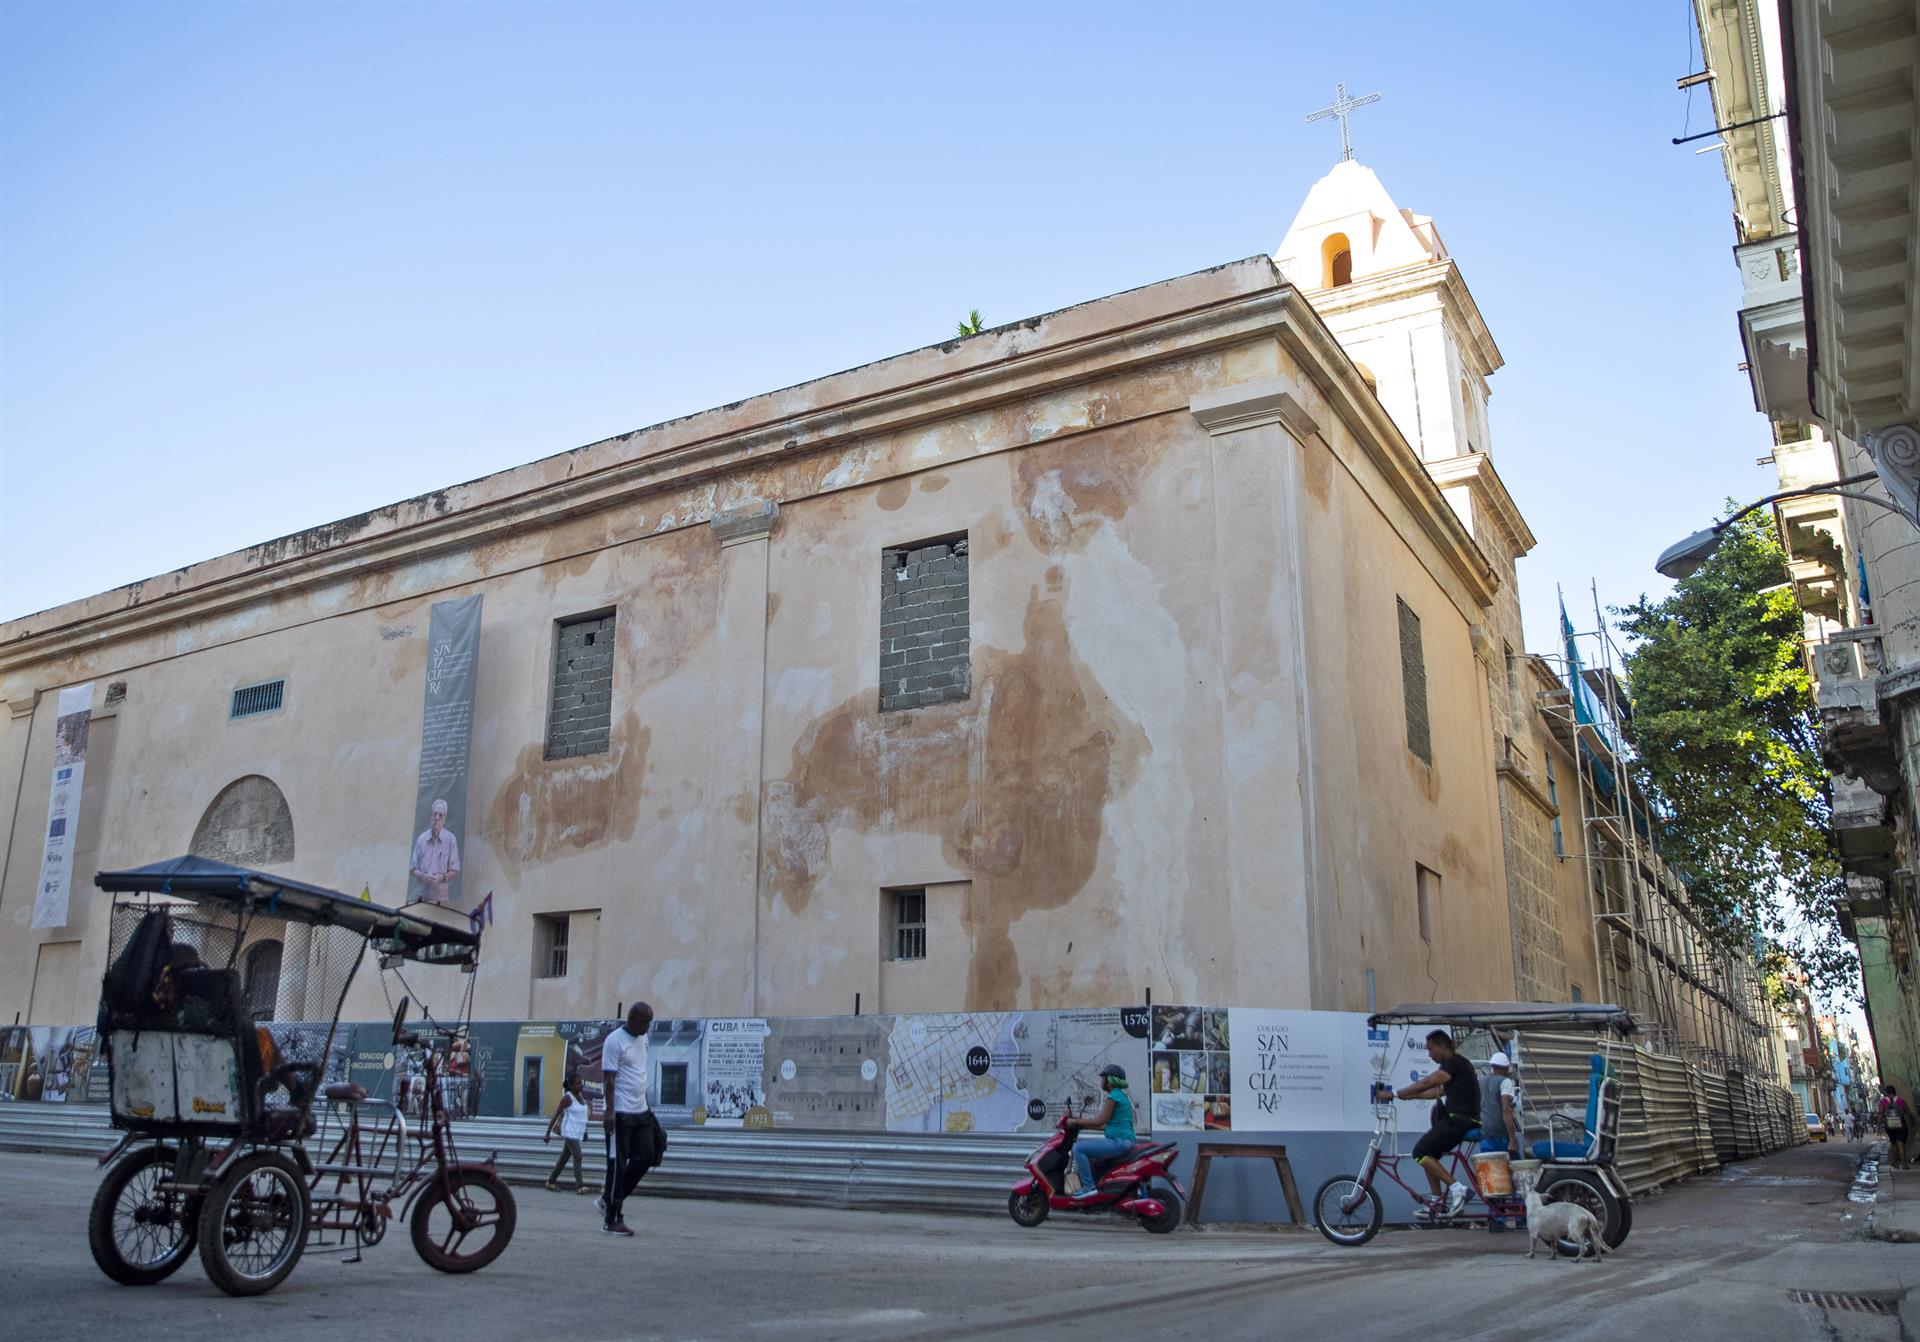 El mayor y más antiguo convento de La Habana revivirá como escuela de arte